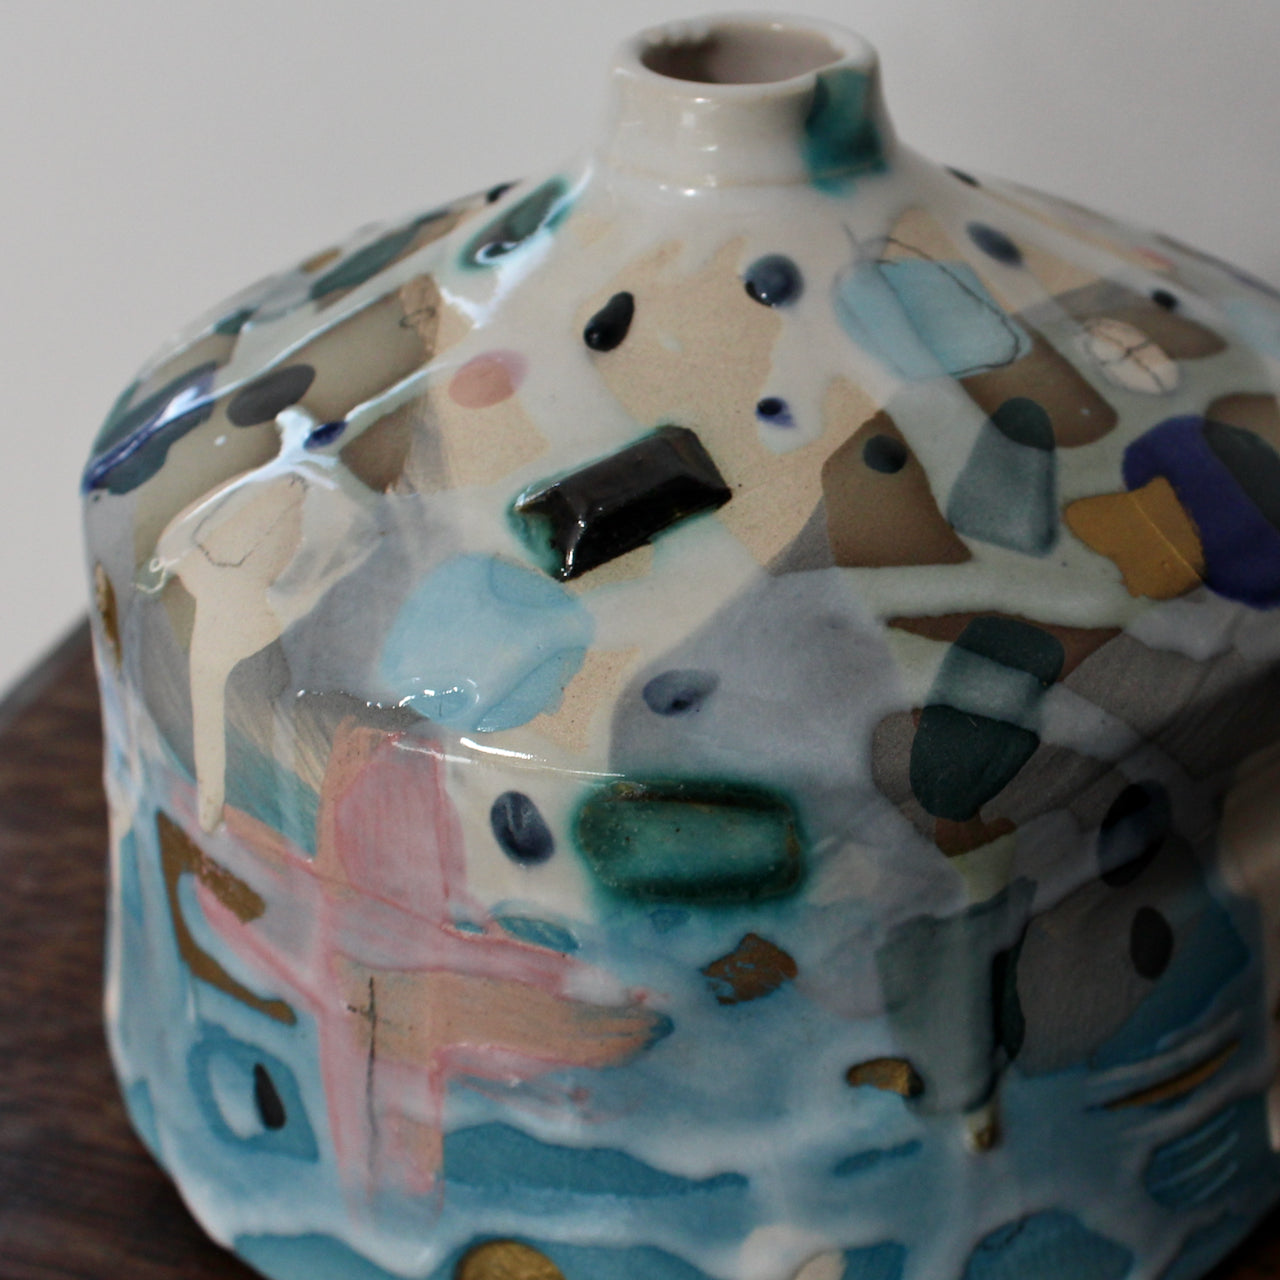 a squat pink and blue ceramic bottle by ceramicist Dawn Hajittofi.